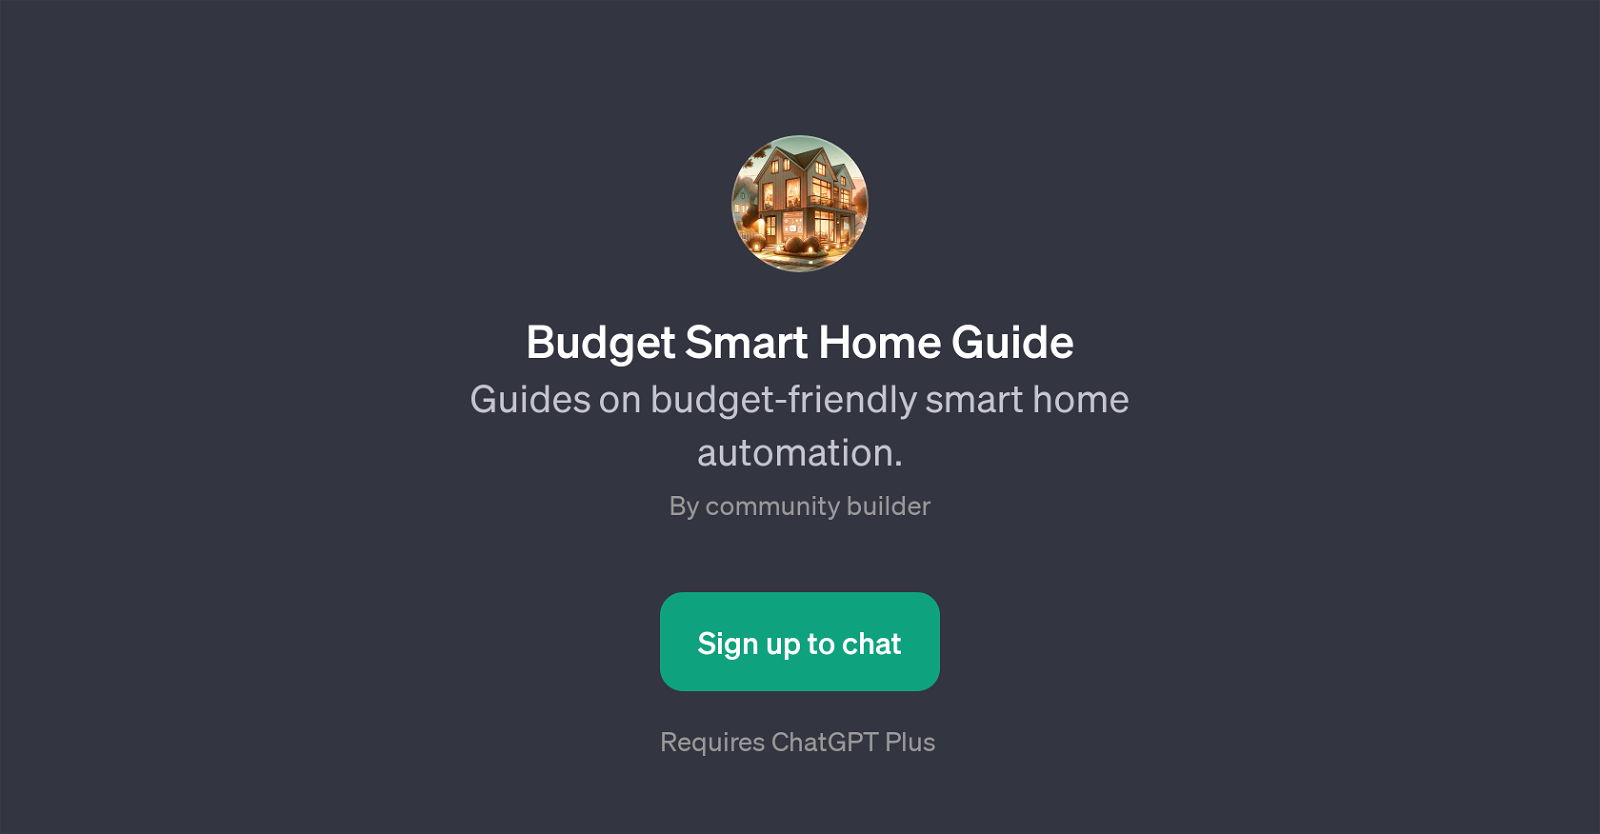 Budget Smart Home Guide website